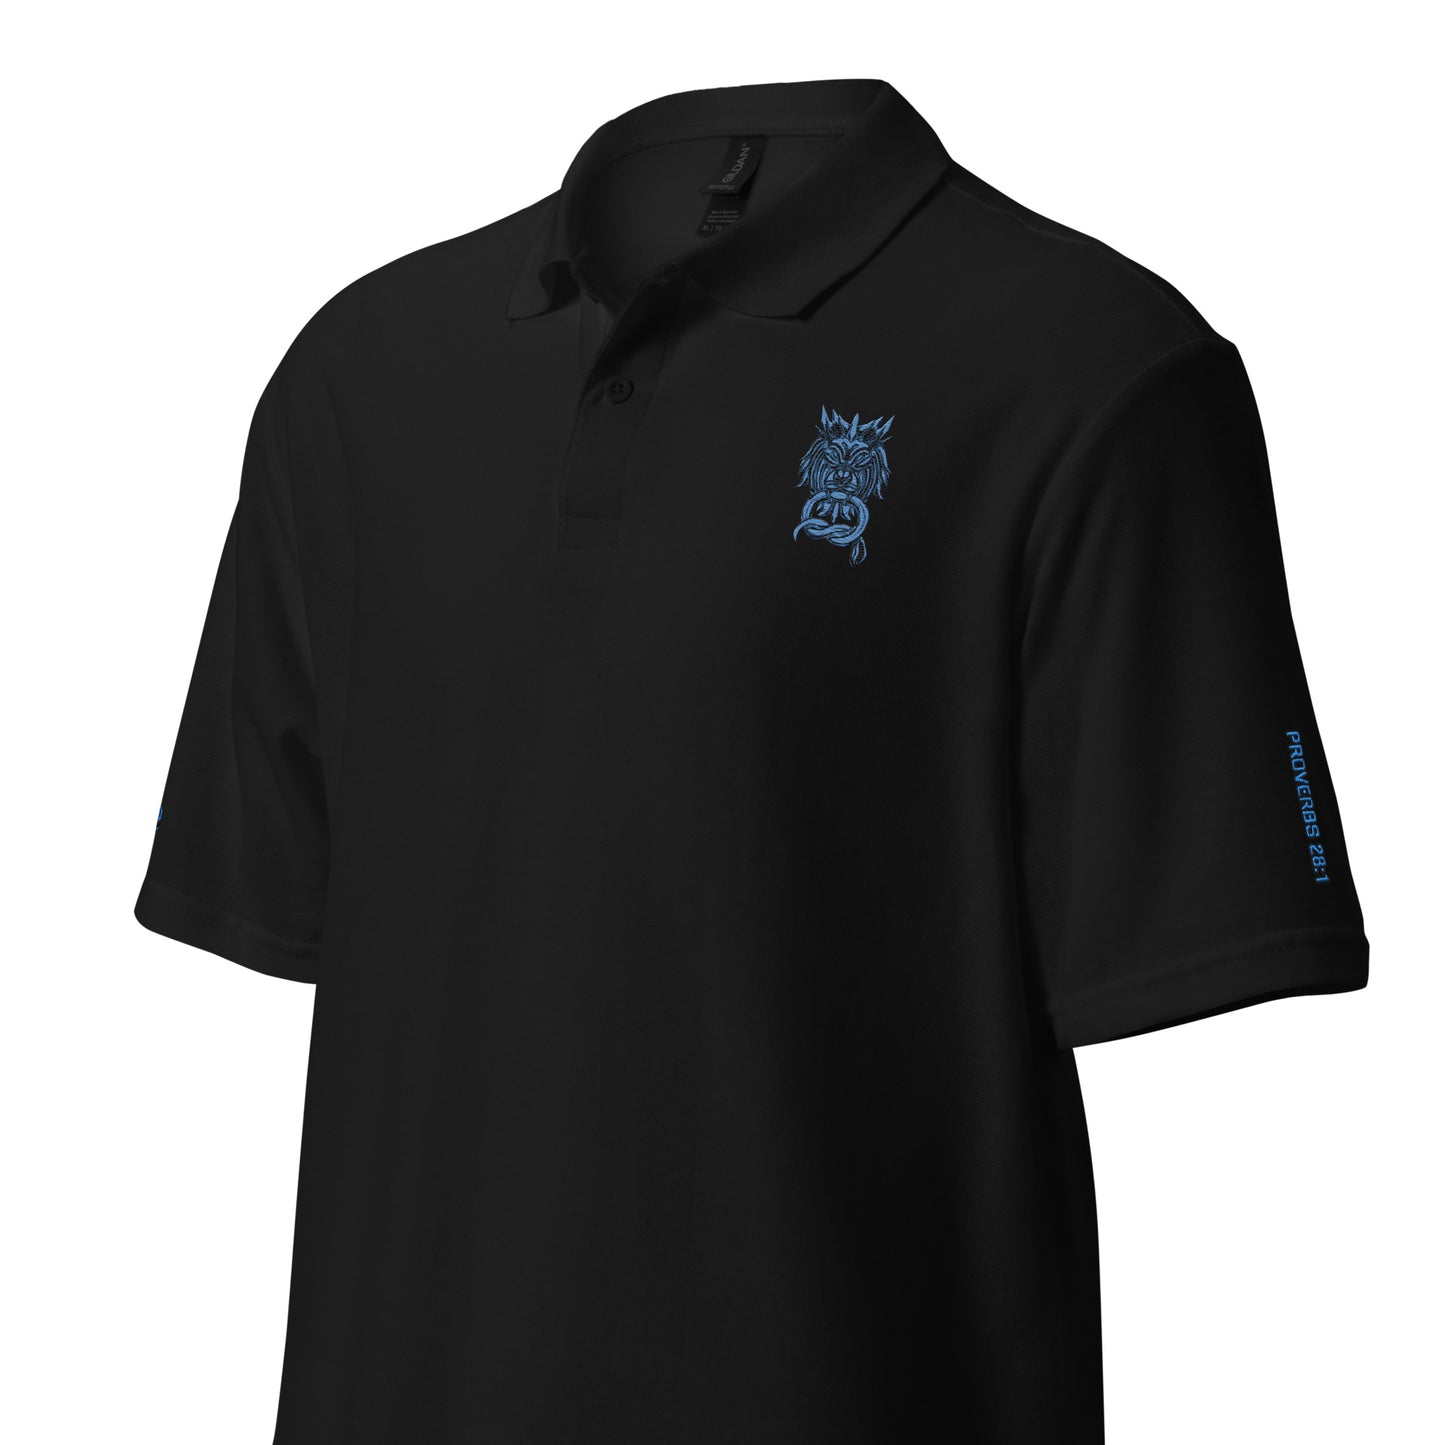 Bold as a Lion- Unisex pique polo shirt